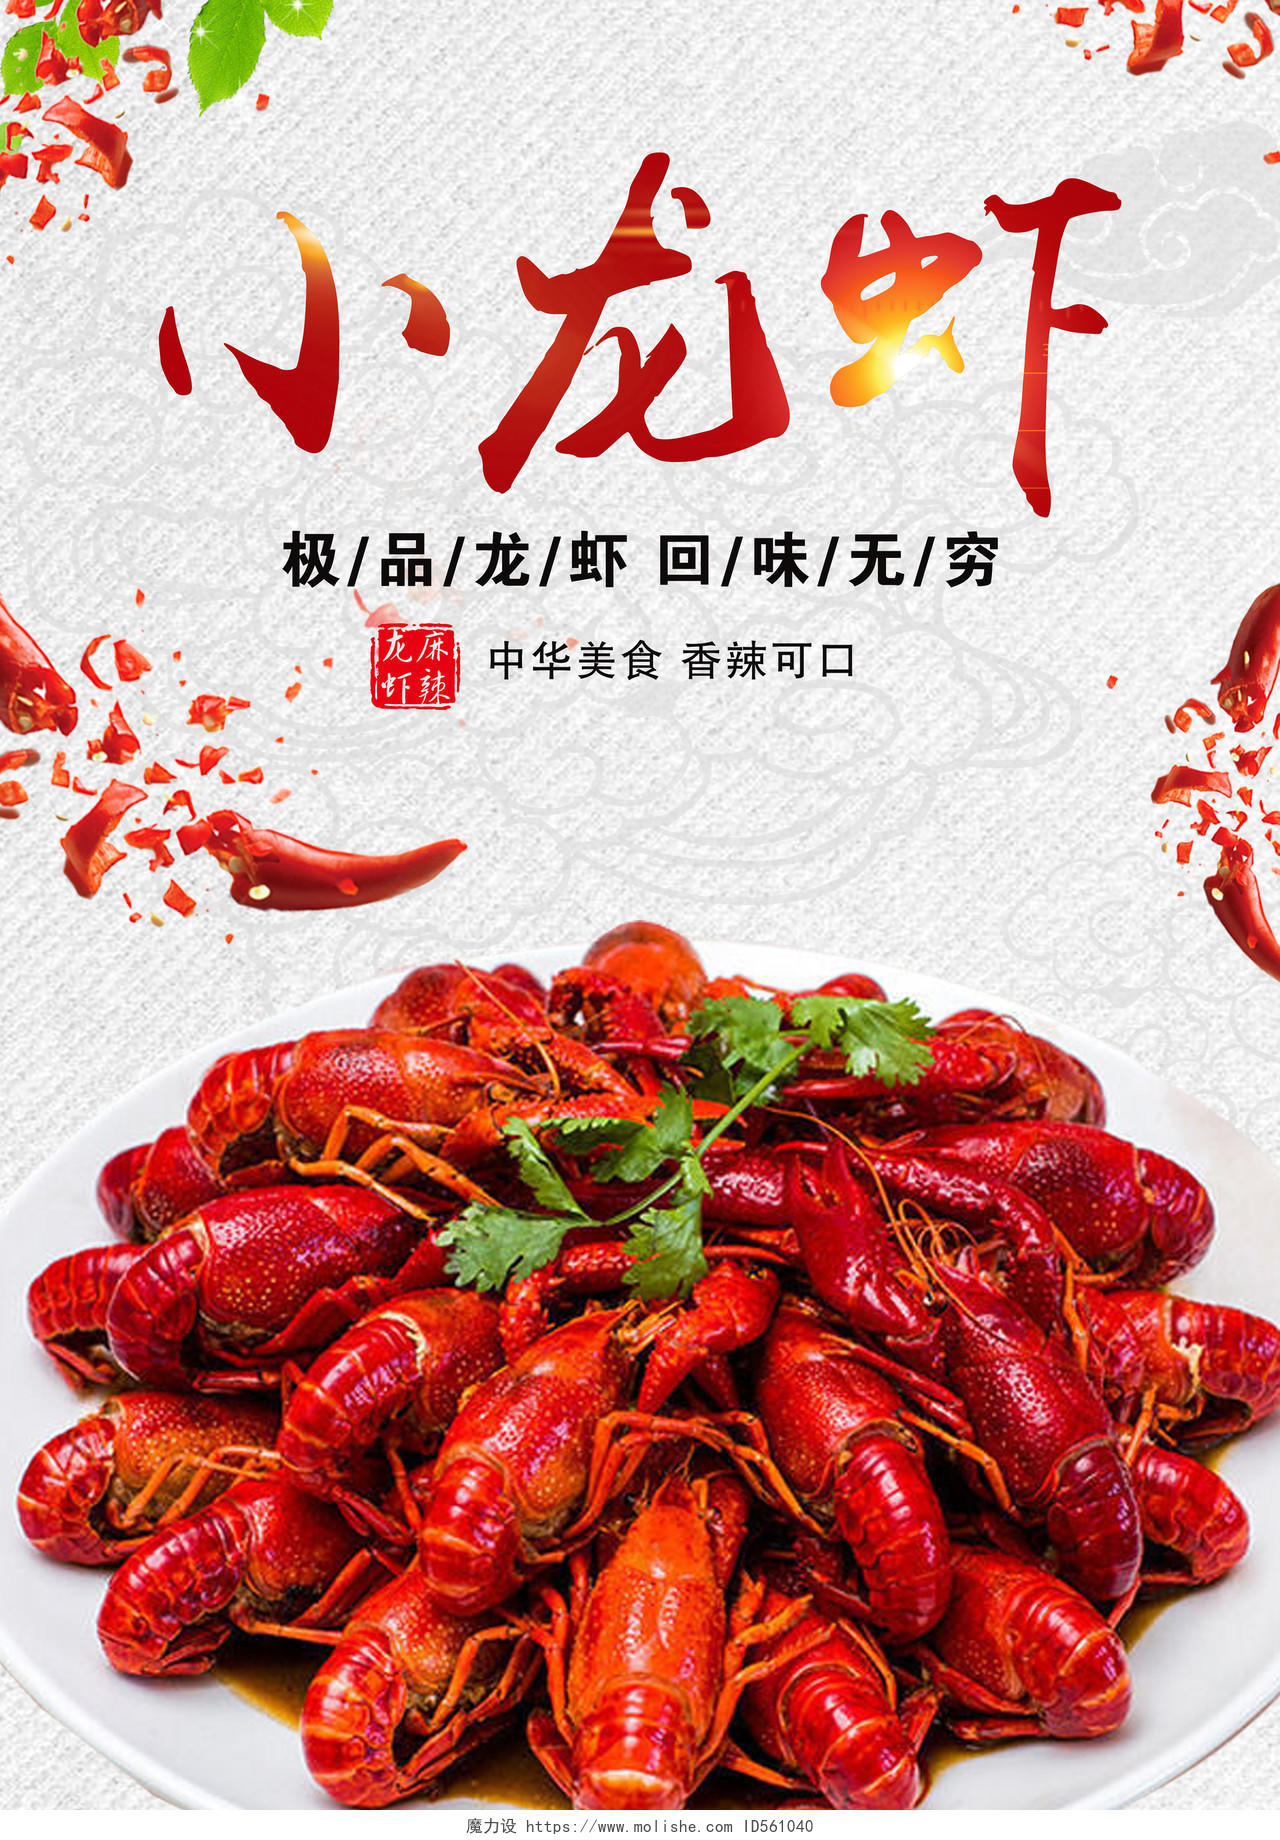 夏天美食麻辣小龙虾宣传促销海报宣传单设计